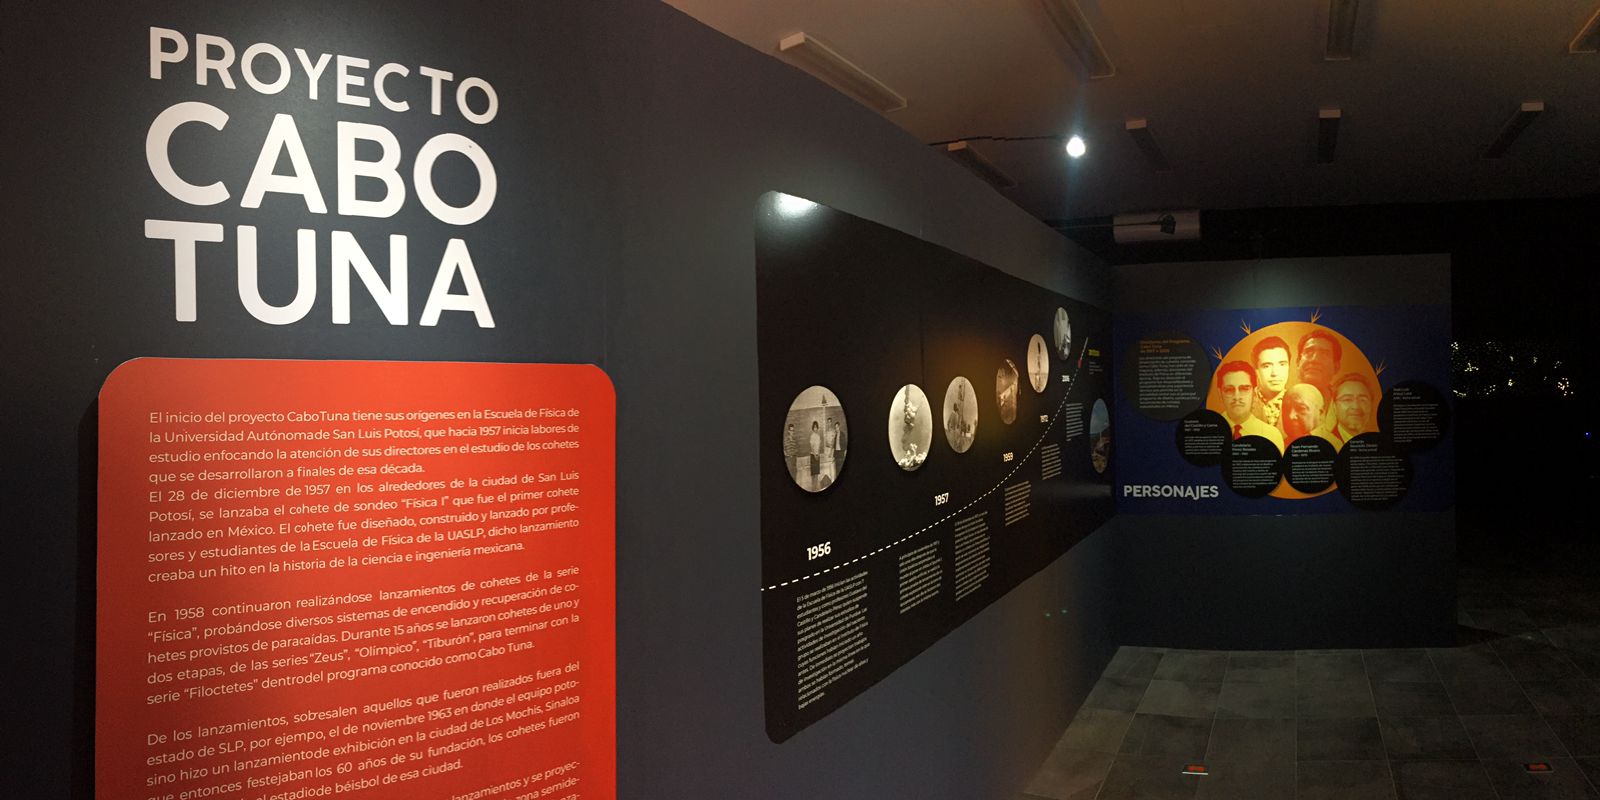 El Museo interactivo de astronomía “El Meteorito”, ubicado en el municipio de Charcas, la sala temporal en donde se exhibe el proyecto “Cabo Tuna”